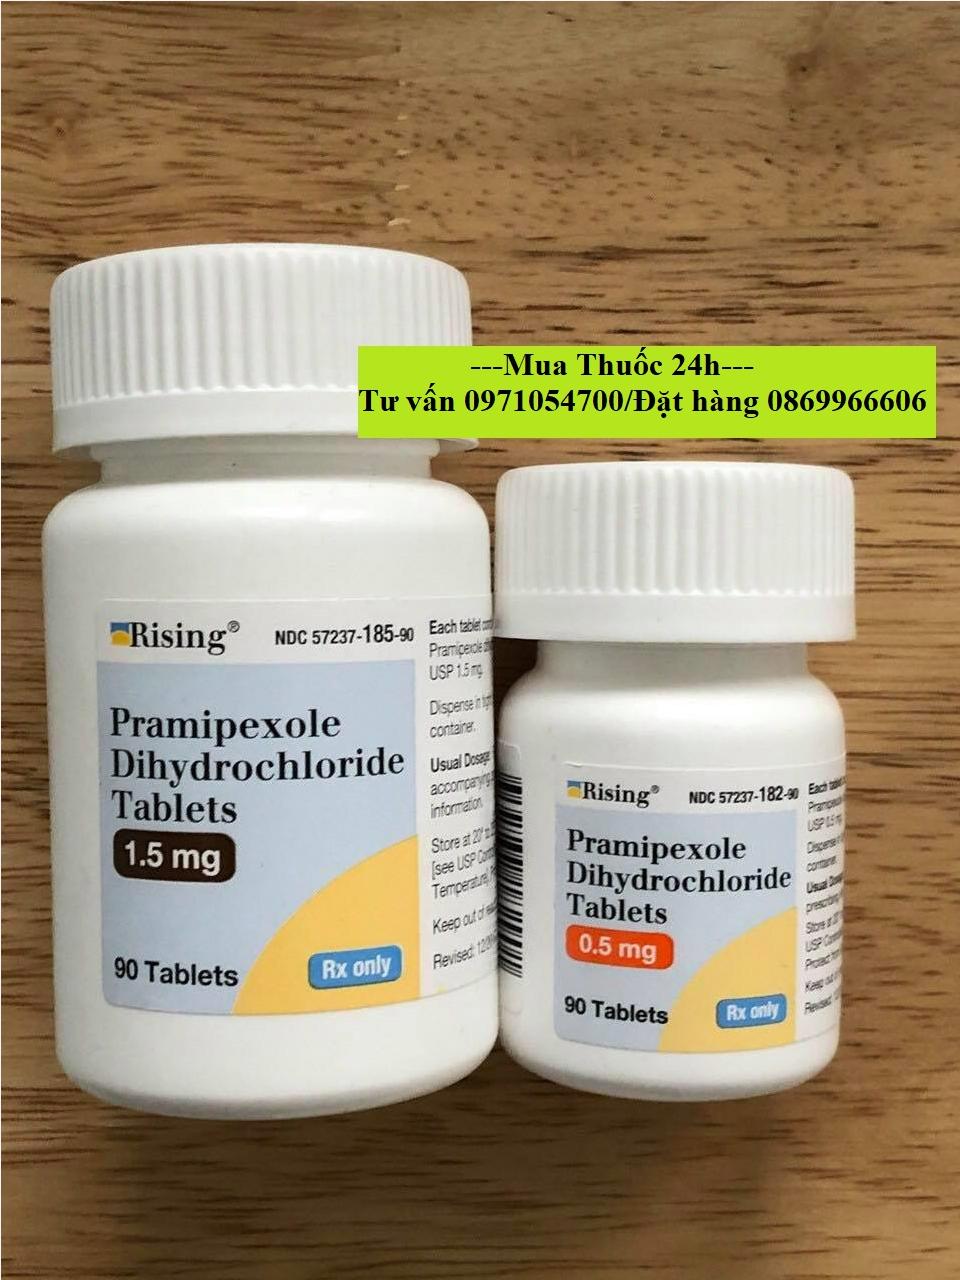 Thuốc Pramipexole Dihydrochloride giá bao nhiêu mua ở đâu?